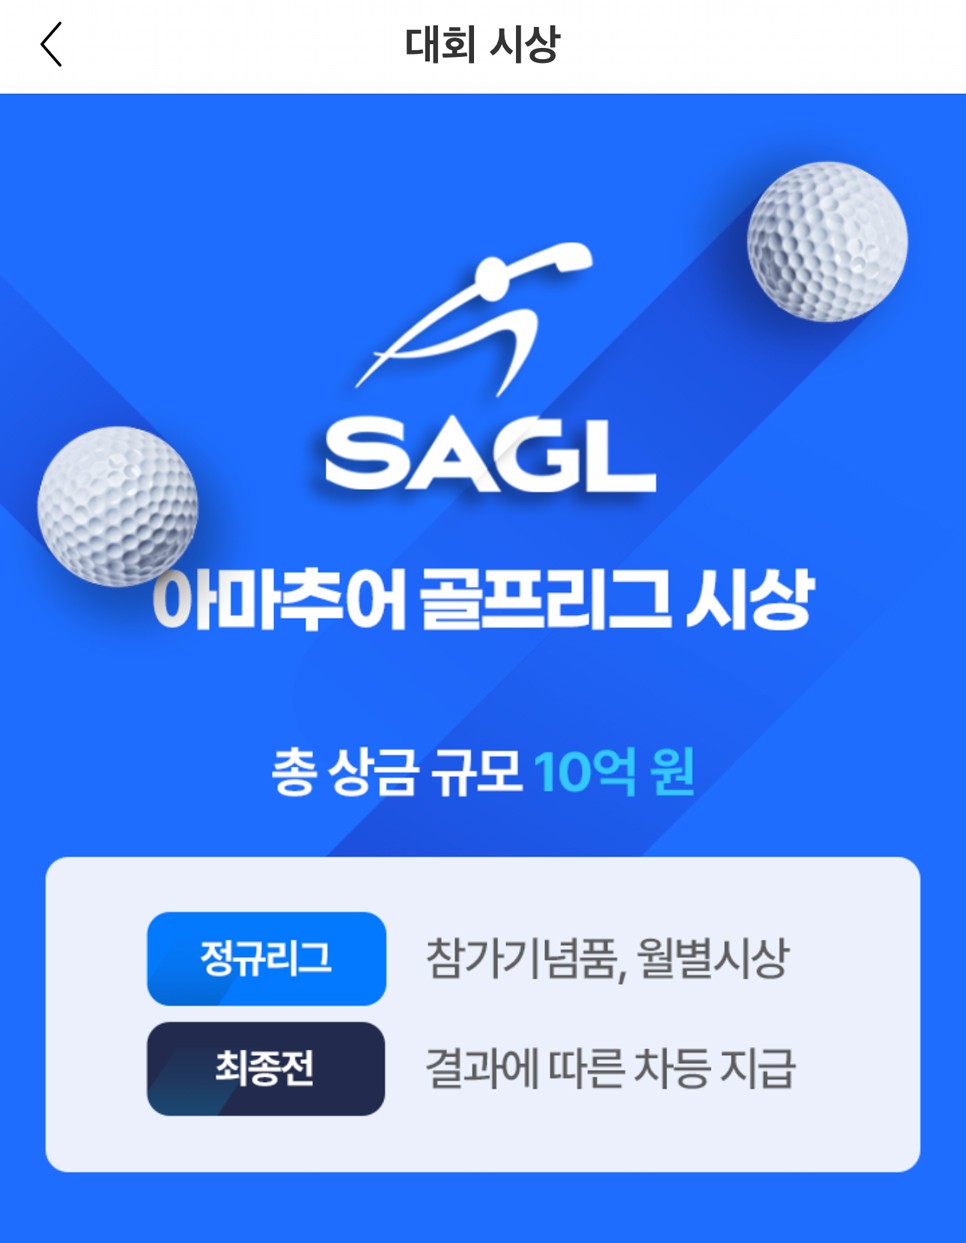 이포cc, 스마트스코어 아마추어 골프대회 (SAGL) 참가 후기!